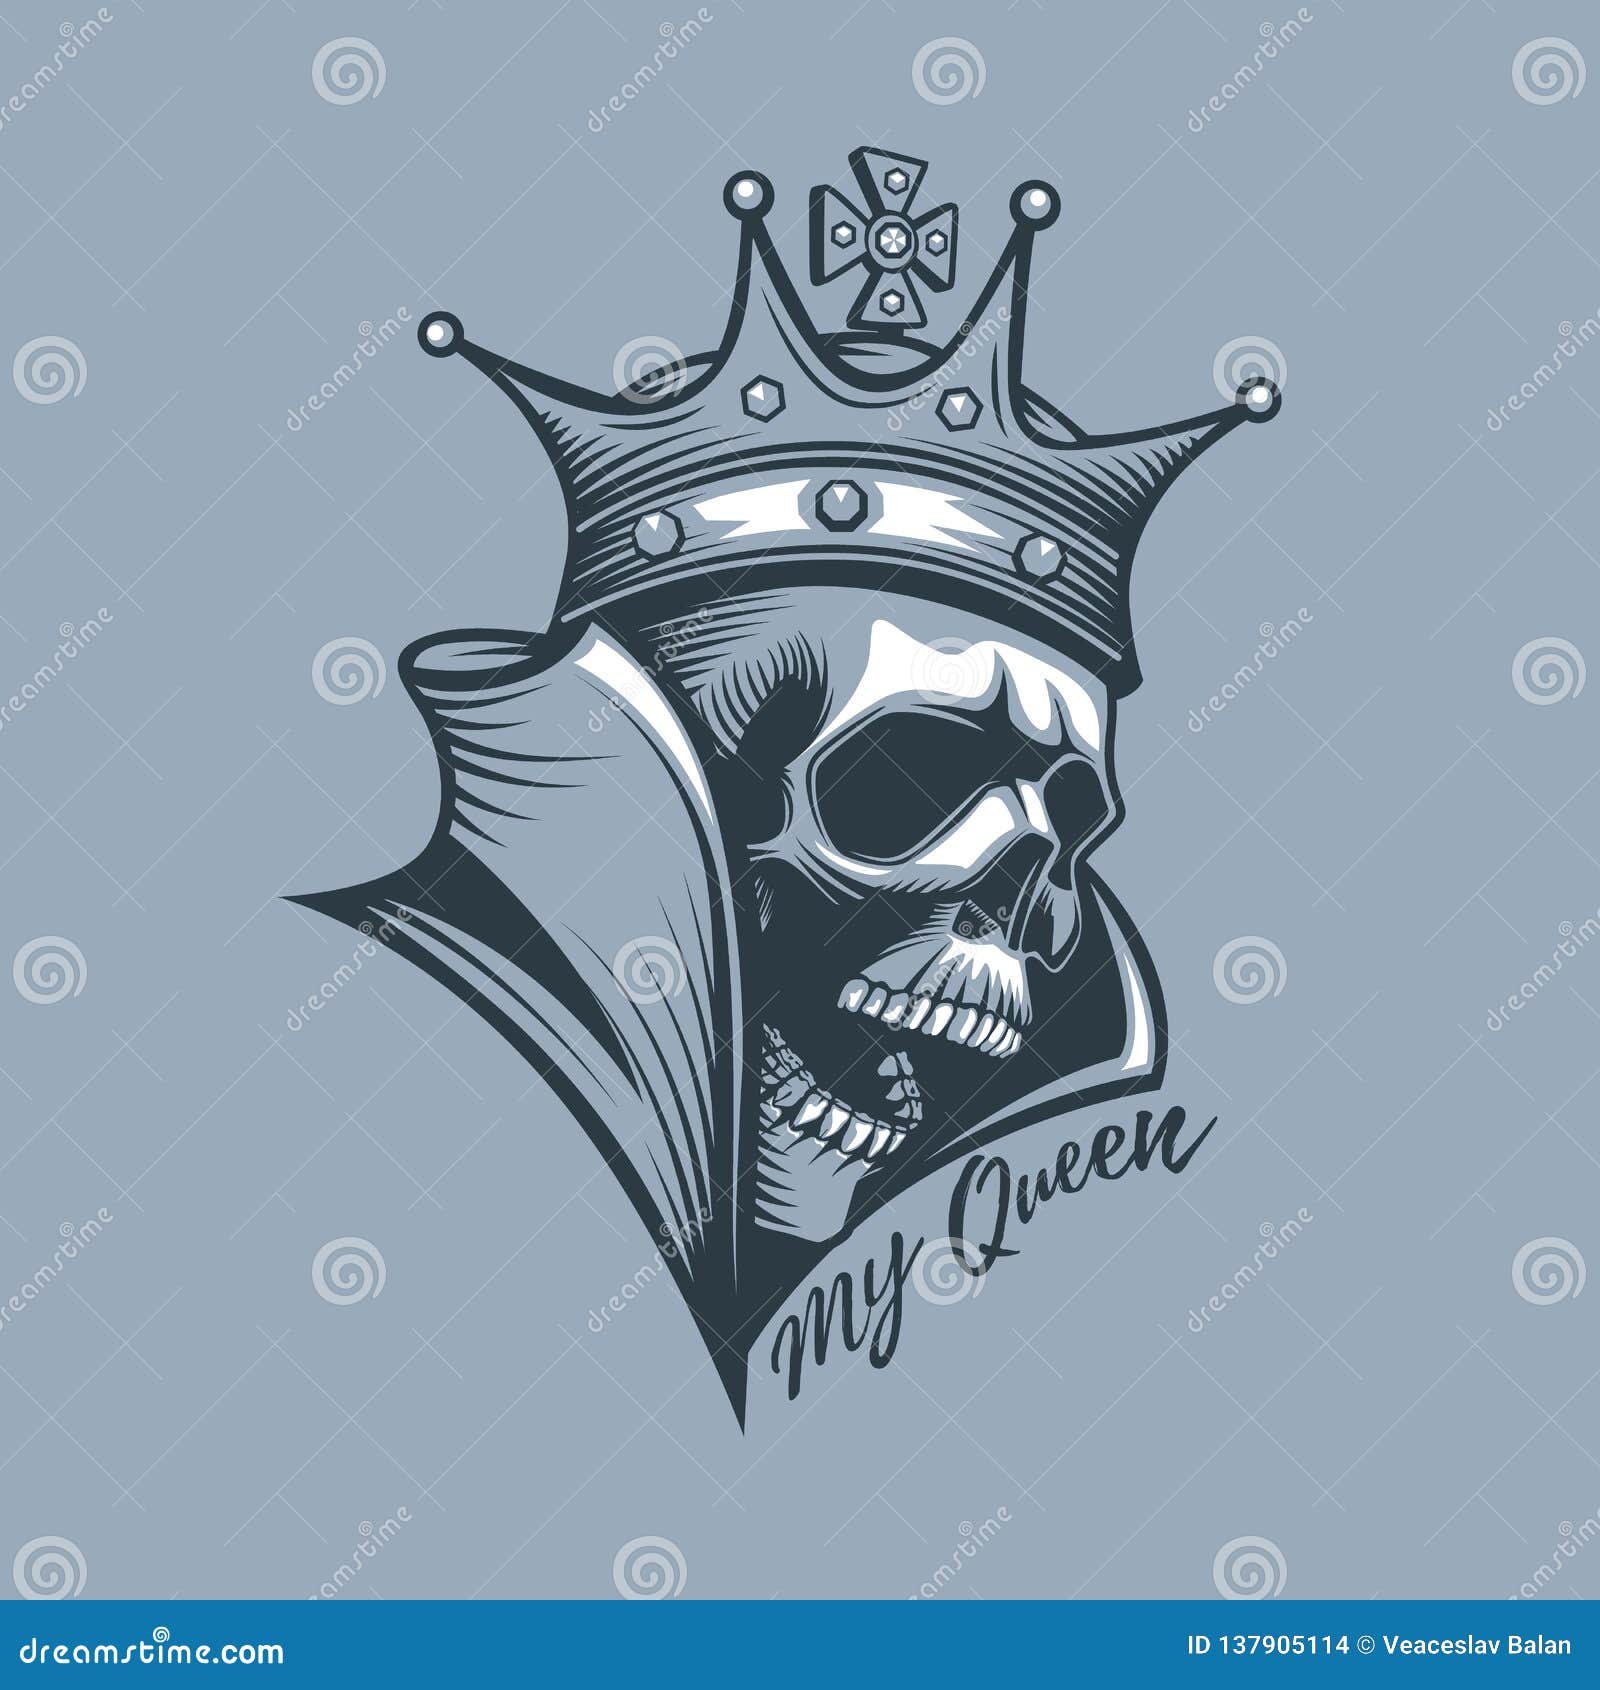 Skull Queen Hand Drawn Illustration Tattoo Stock Vector Royalty Free  1555415105  Shutterstock